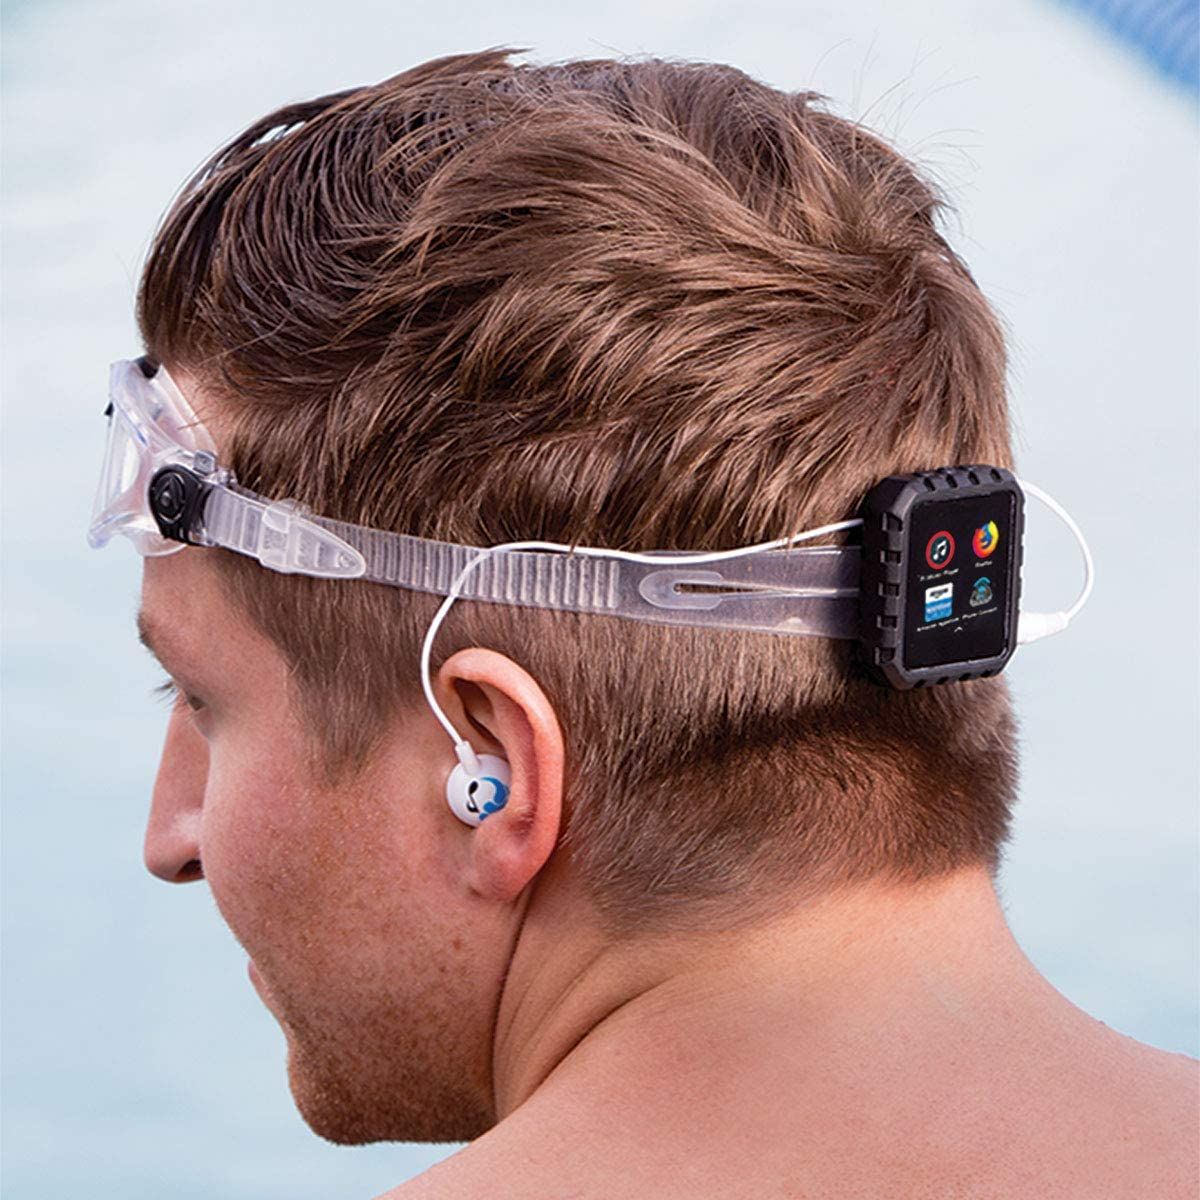 Swimbuds Sport Premium Waterproof Headphones 4